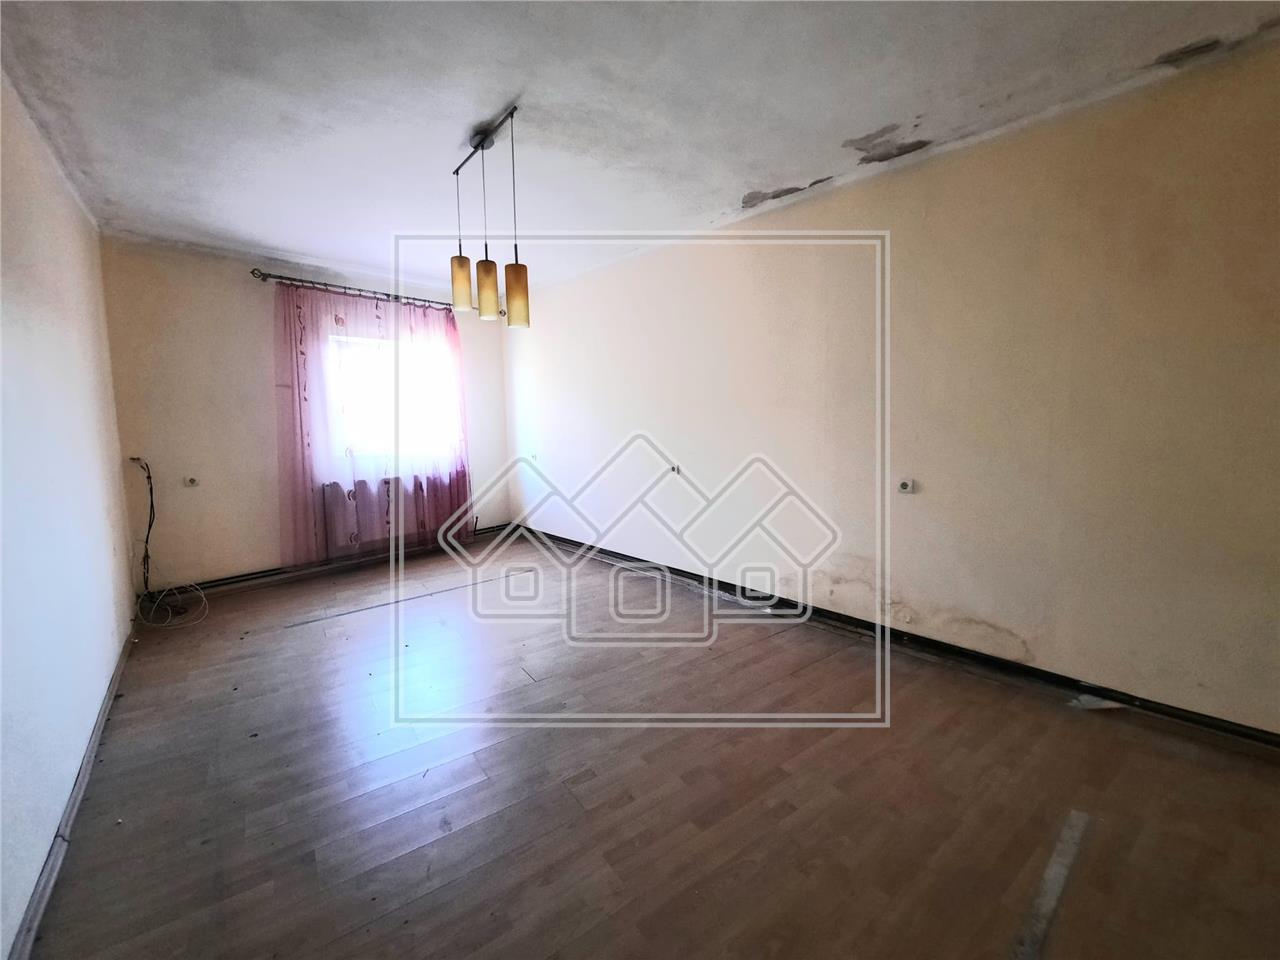 Apartament de inchiriat in Alba Iulia - 2 camere - Zona Centrala